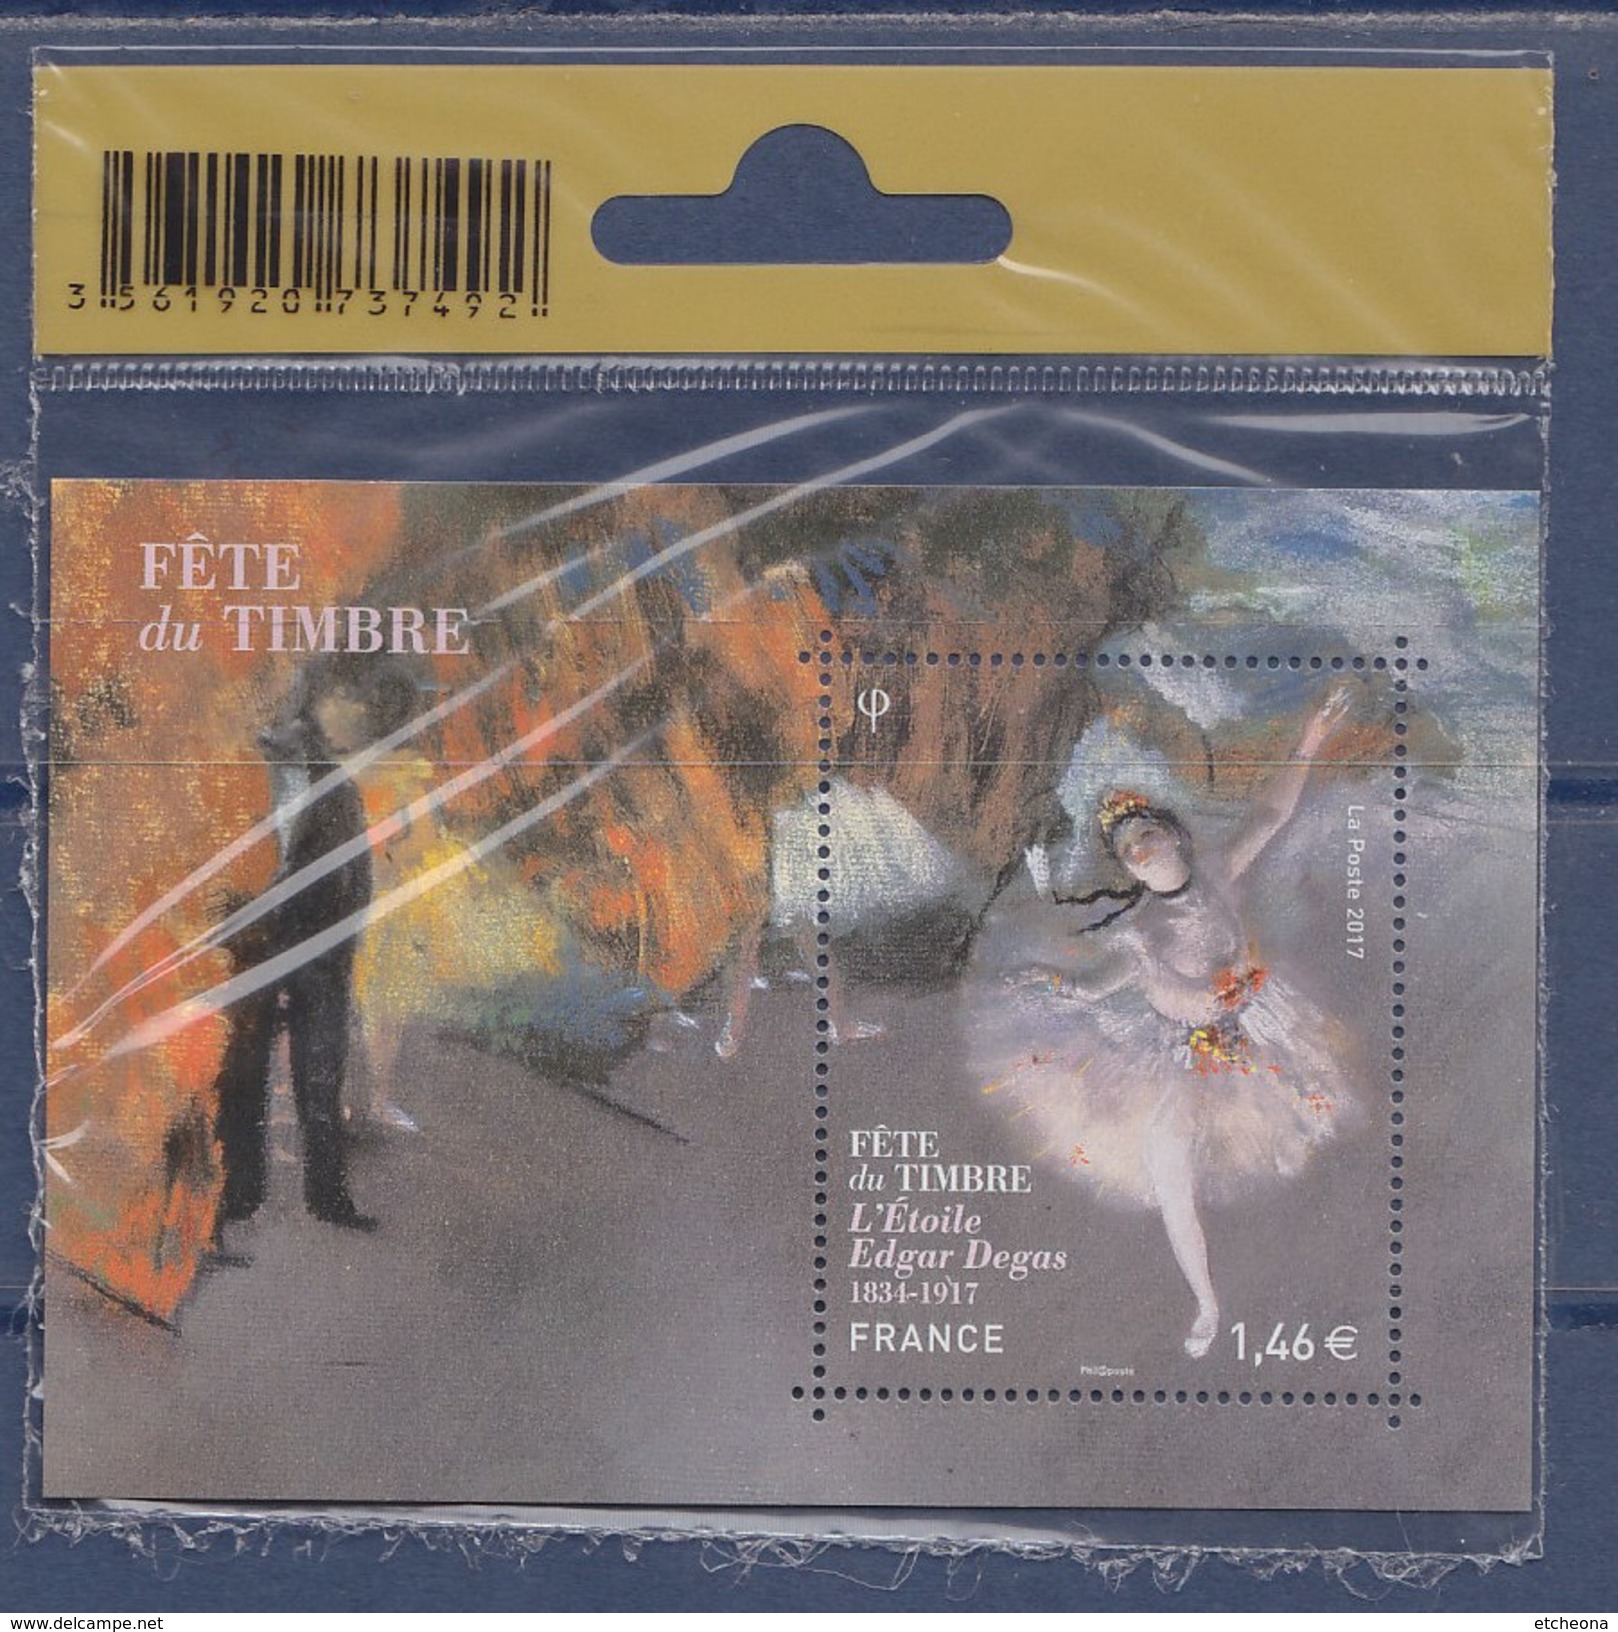 = Journée Du Timbre 2016 Bloc Etoile D'Edgar Degas Sous Emballage Scellé D'origine Pour Bureau De Poste F5084 - Mint/Hinged